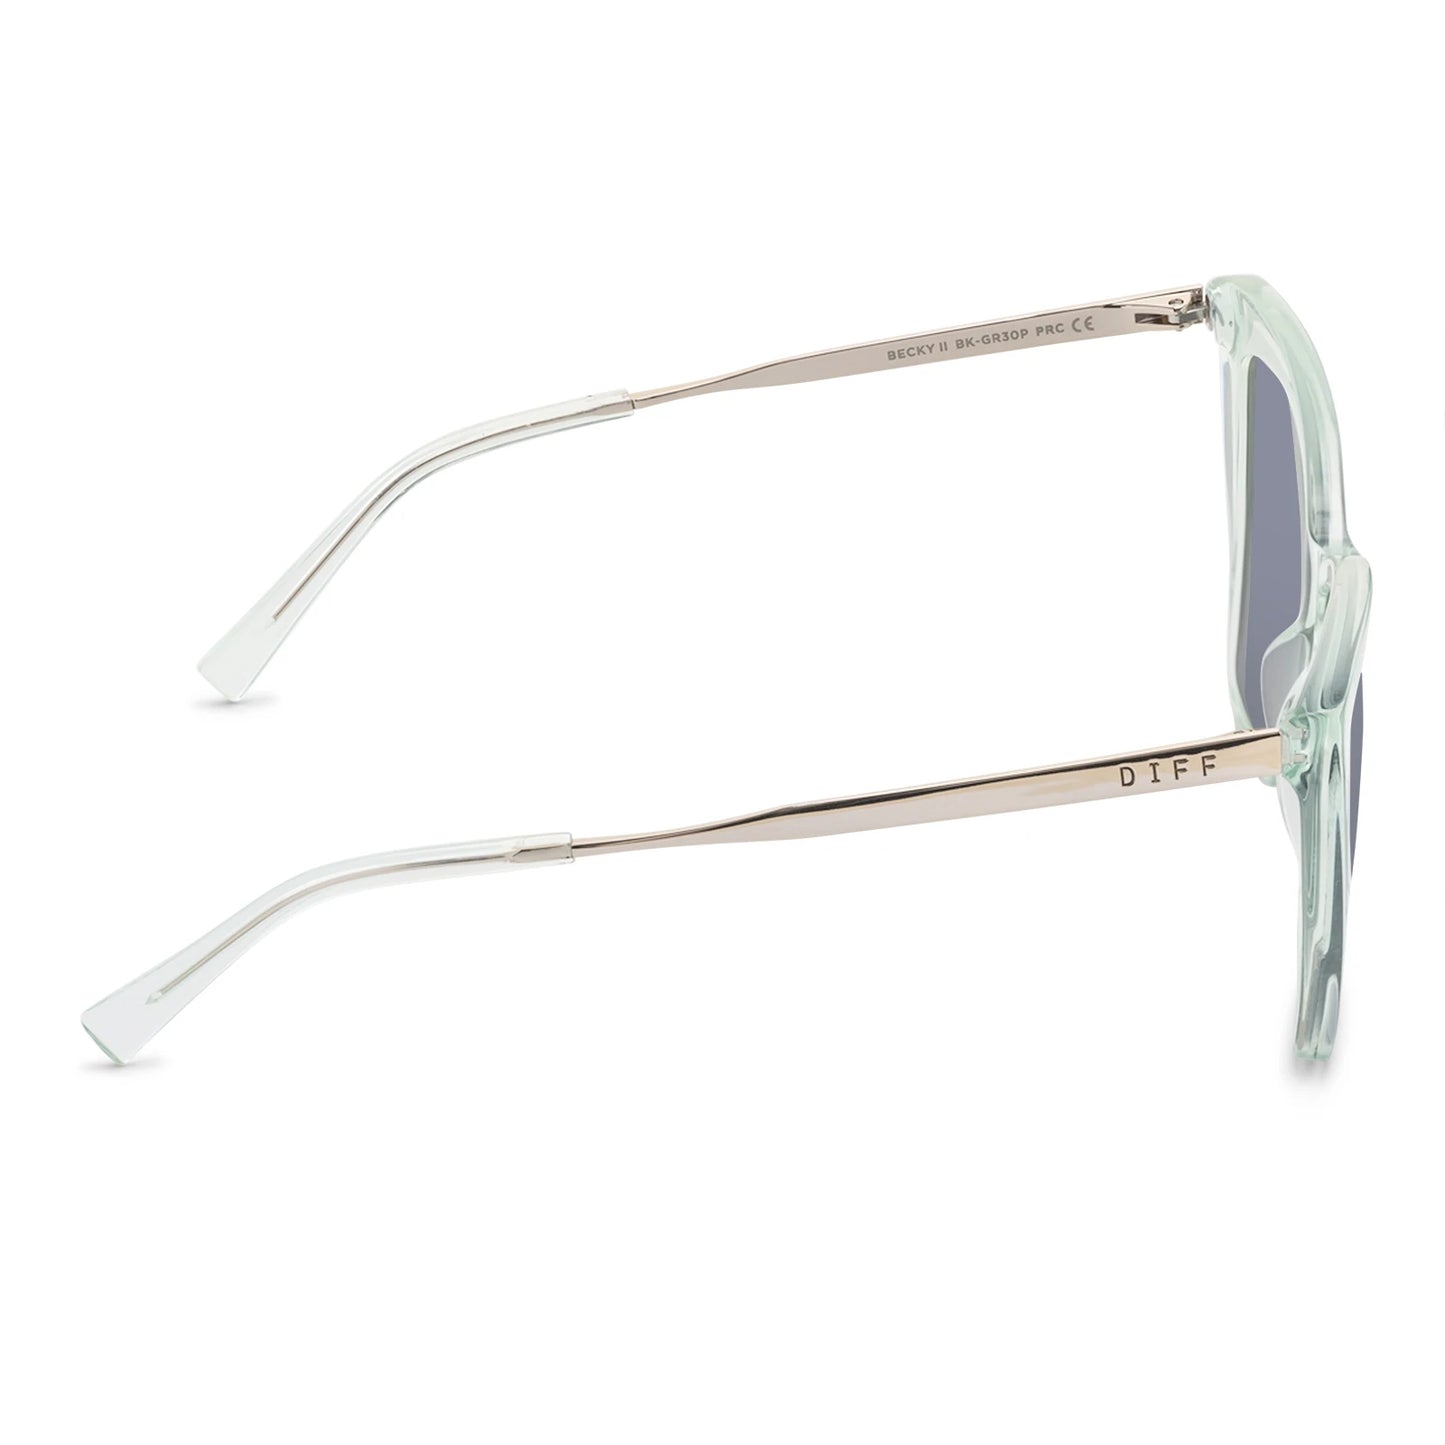 Becky II Lagoon Crystal/Grey Mirror Sunglasses